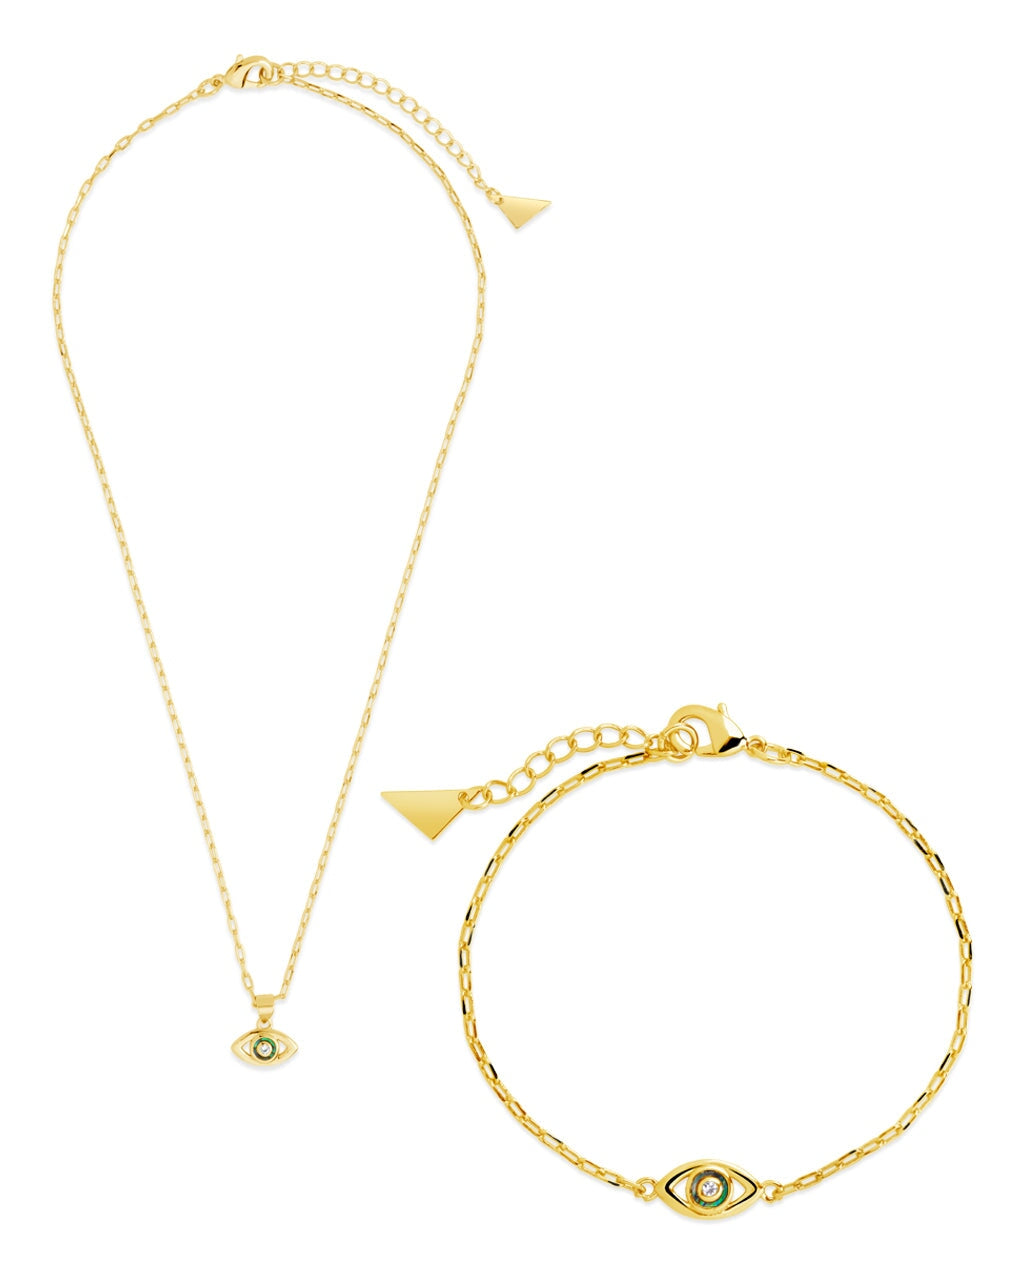 Mother of Pearl & CZ Evil Eye Bracelet and Necklace Set Bundles Sterling Forever Gold 